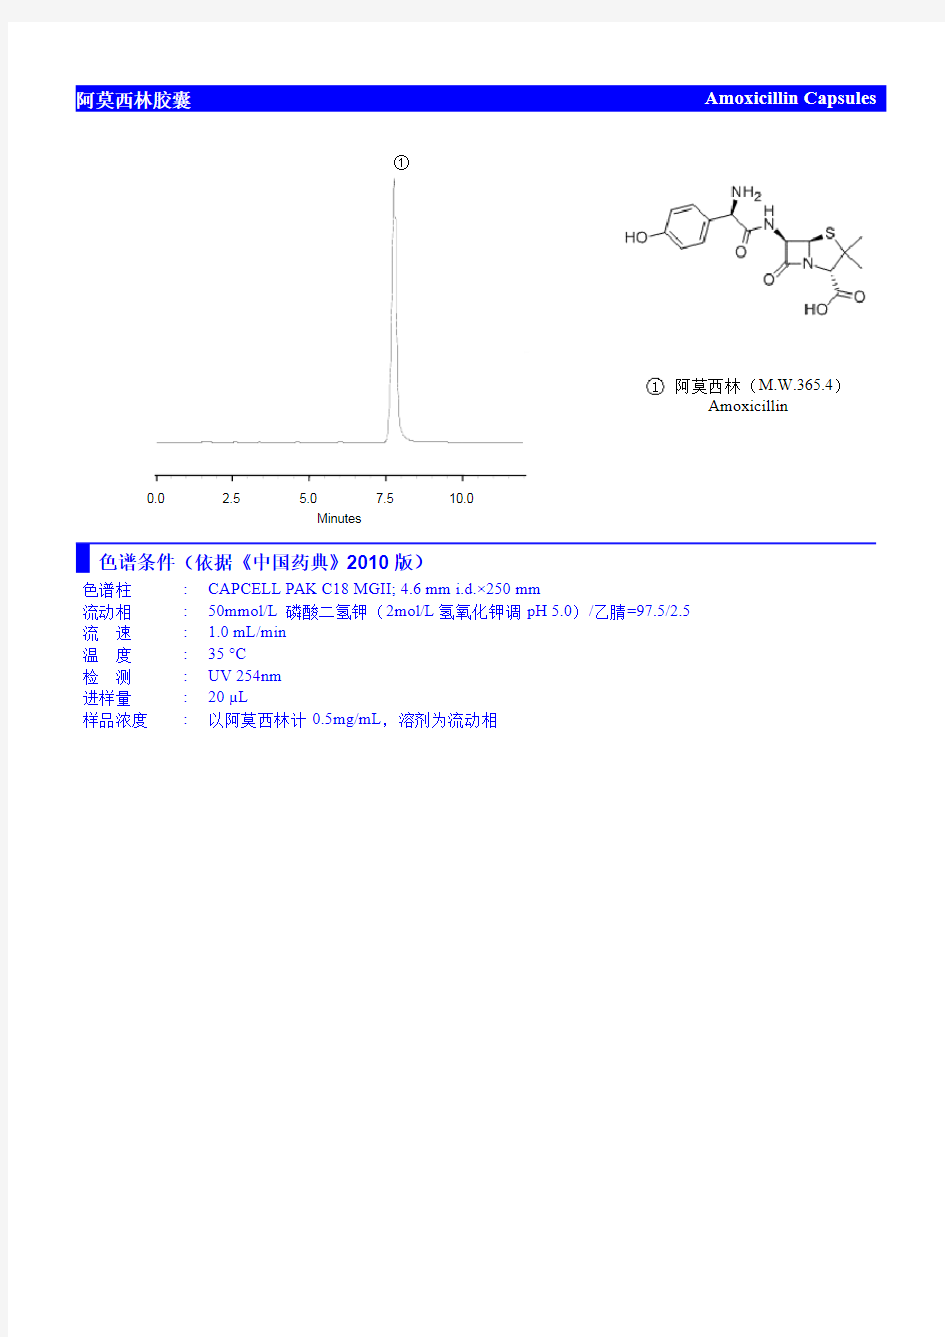 阿莫西林的液相色谱分析报告 方法参照中国药典